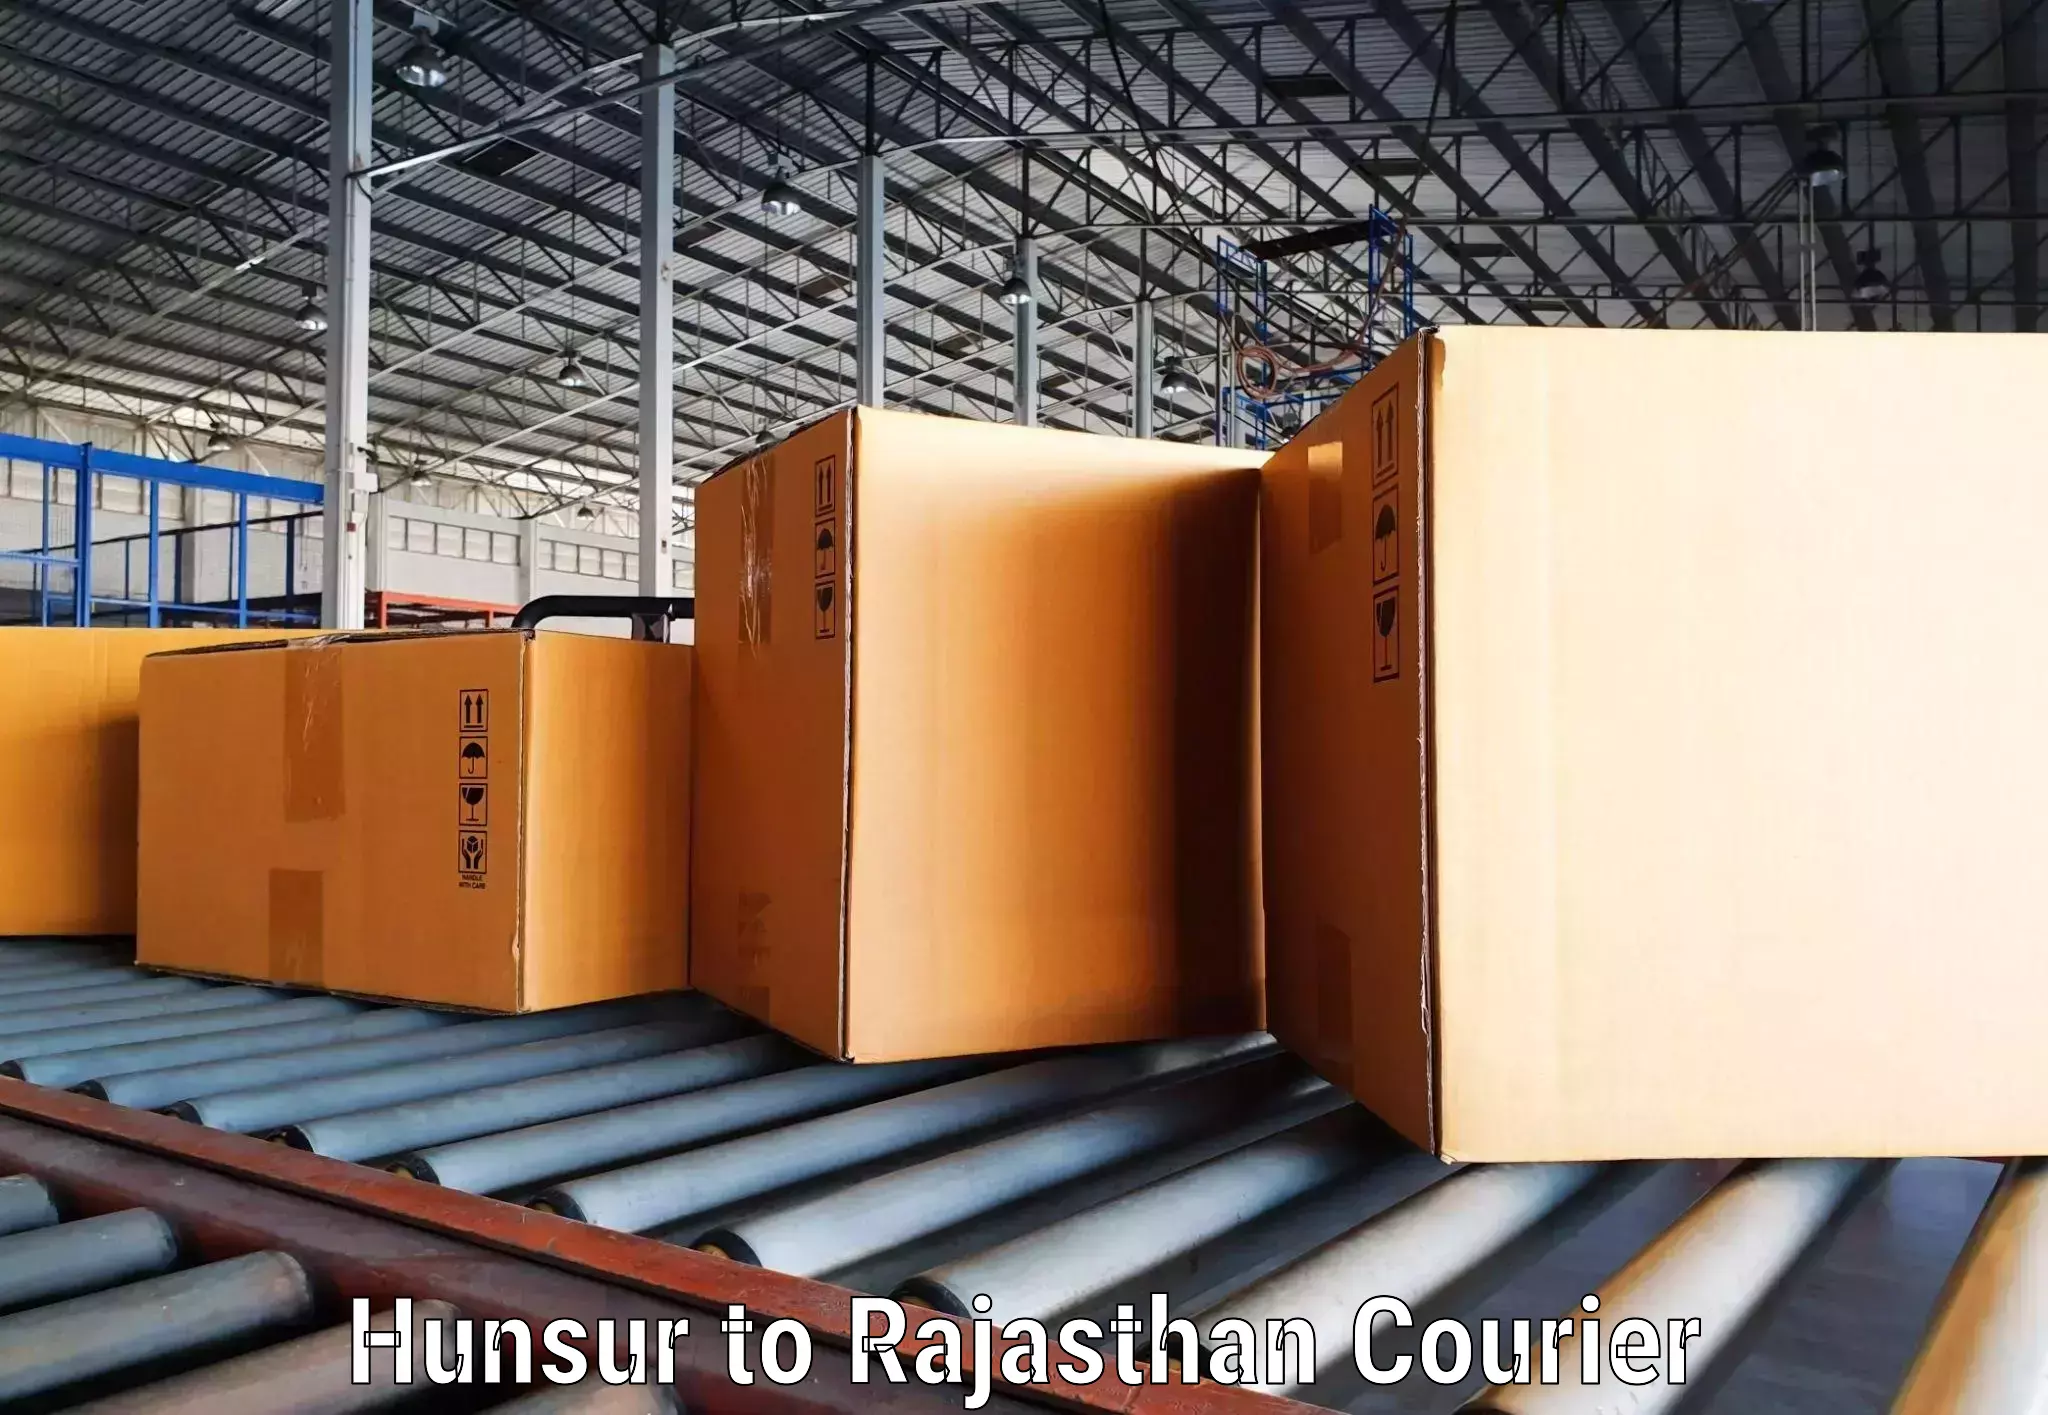 Digital courier platforms Hunsur to Jhunjhunu